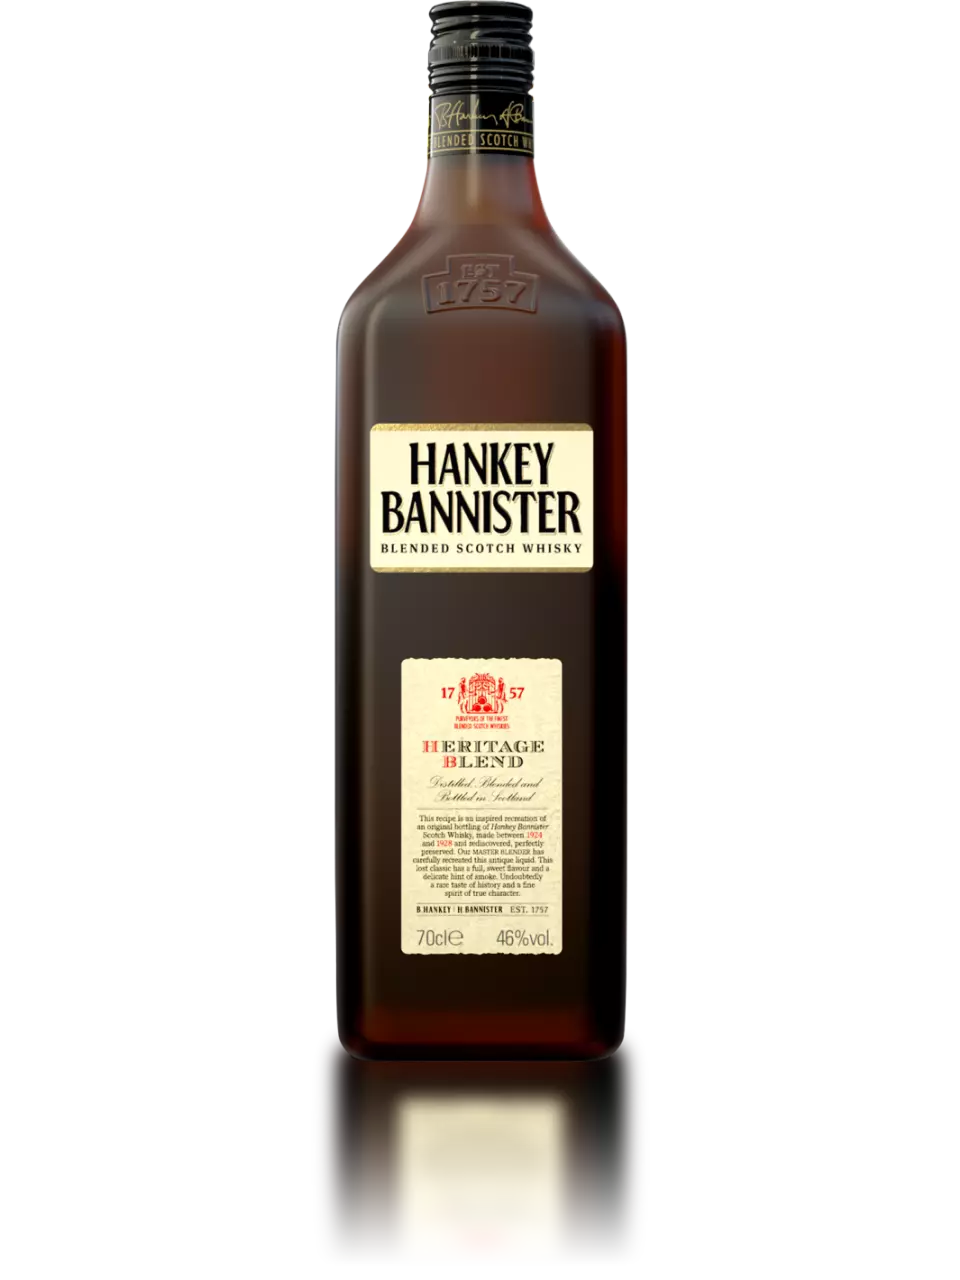 Hankey Bannister Heritage Blend v2 whisky detail